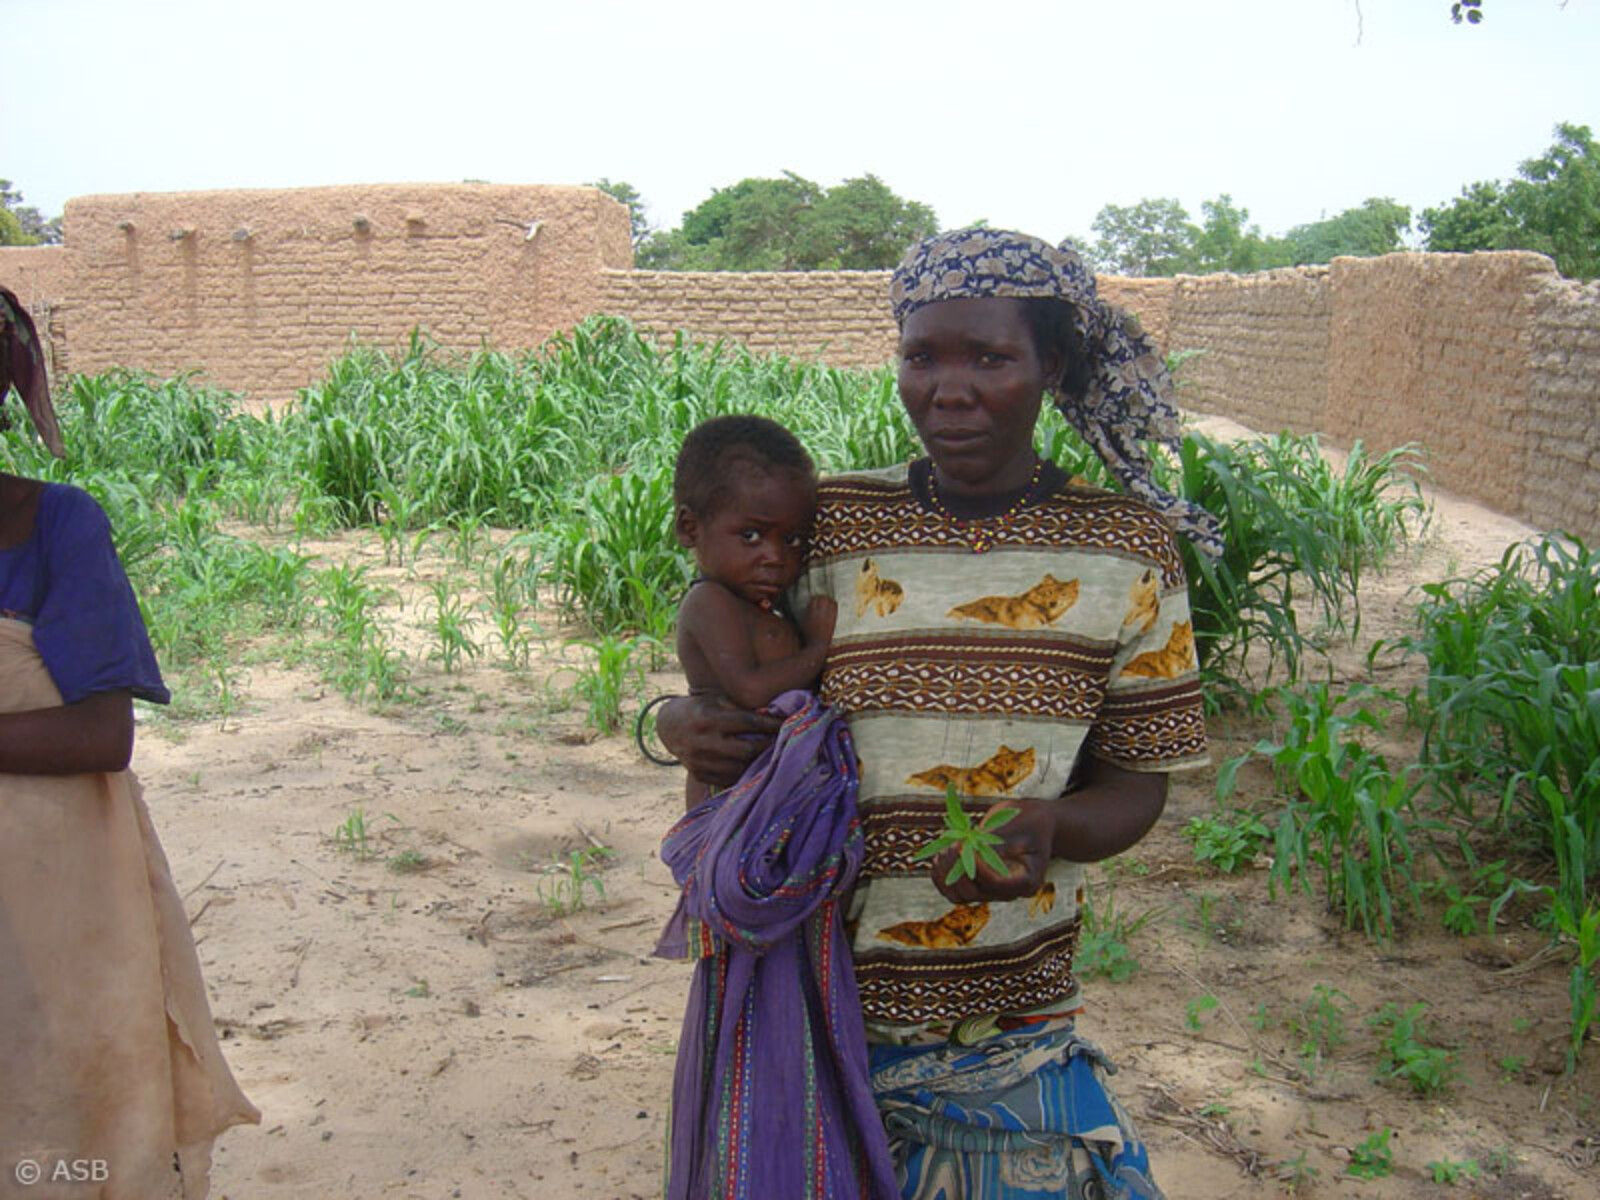 Der ausbleibende Regen hat in vielen Regionen in Westafrika/Sahel zu Ernteausfällen geführt.